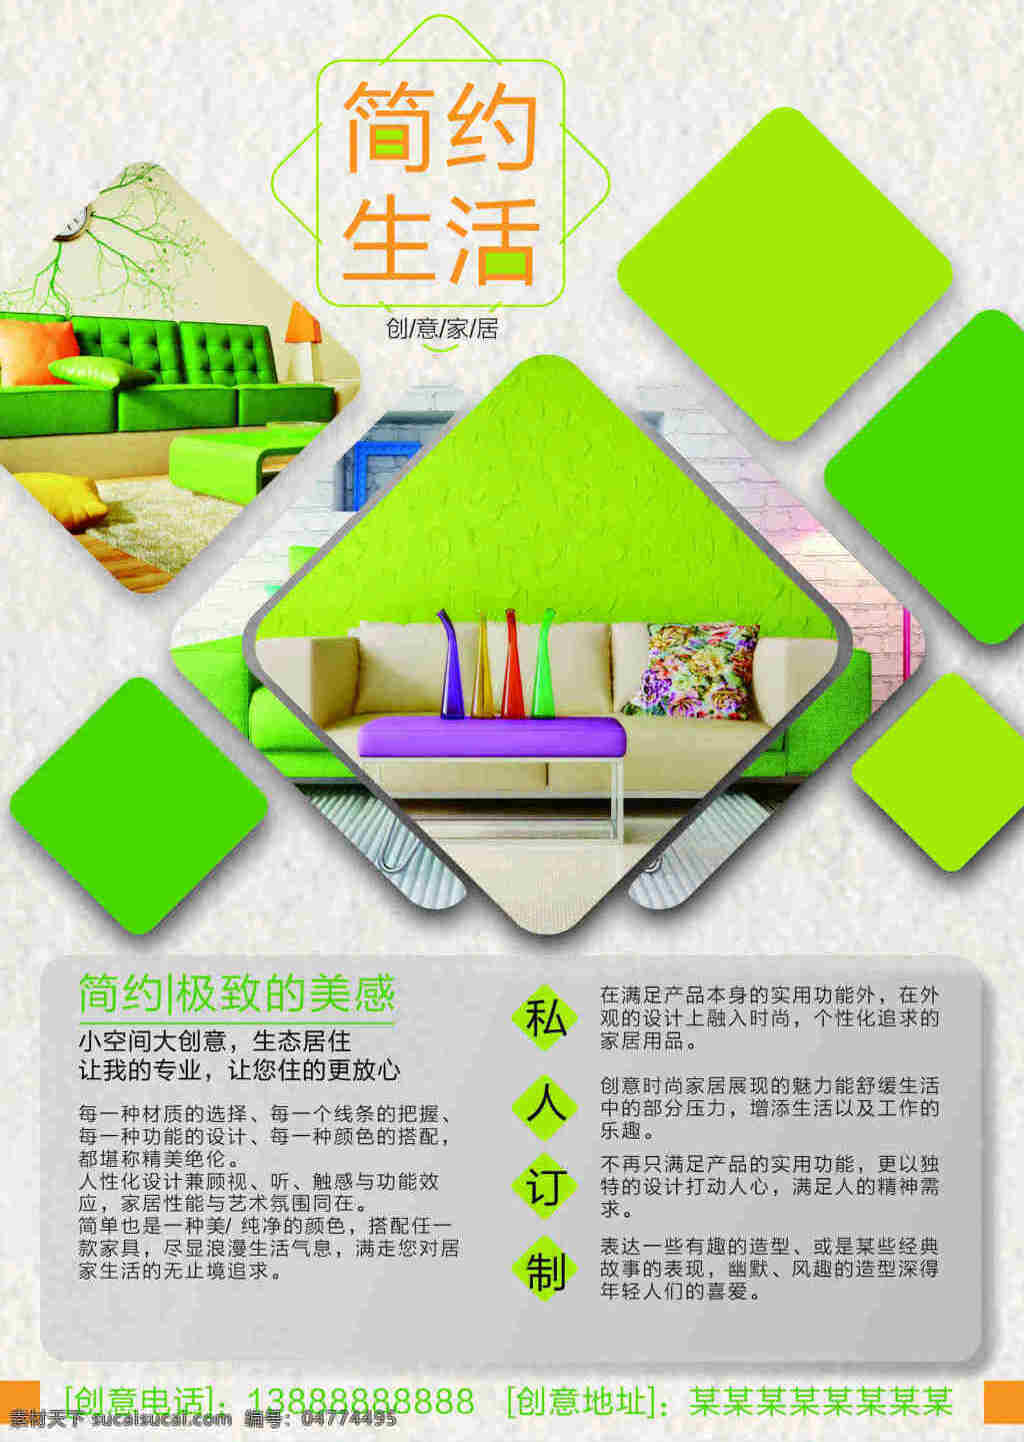 简约 生活 创意家居 宣传海报 宣传 单子 简单 创意 绿色沙发 简约生活 私人订制